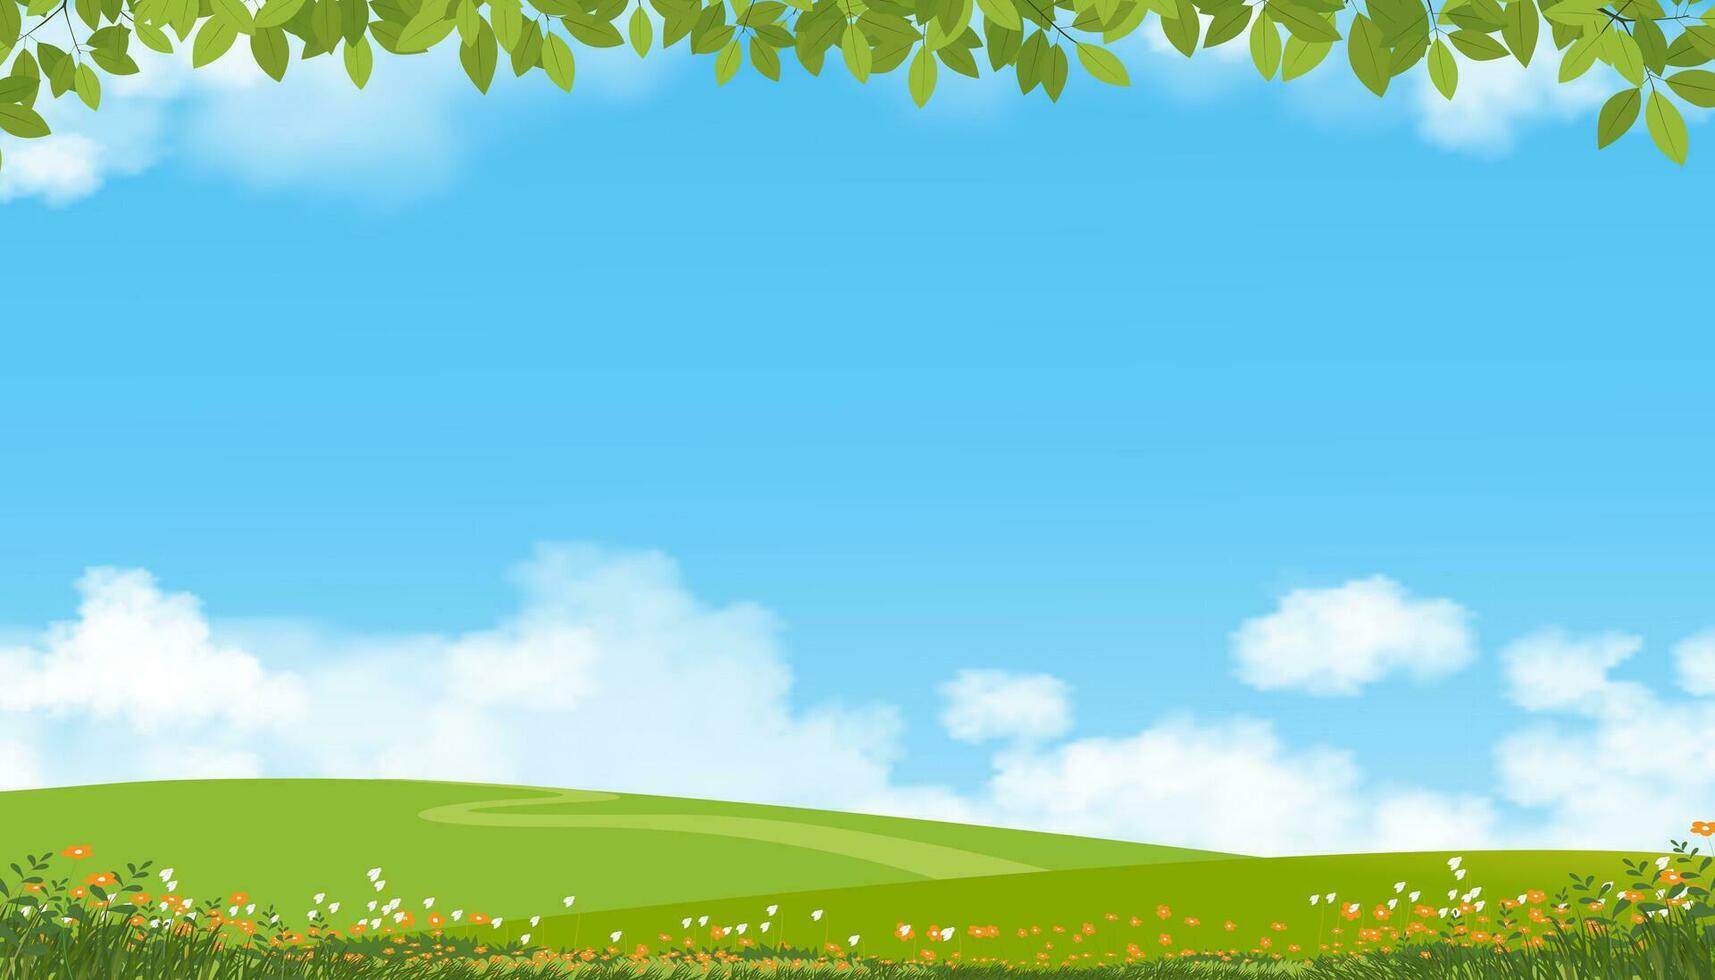 la nature printemps campagne paysage, vert champ,nuage,été ciel, naturel horizon rural scène avec vert Prairie et fleur sur collines dans ensoleillé jour, bannière pour mangeur, environnement journée Contexte vecteur